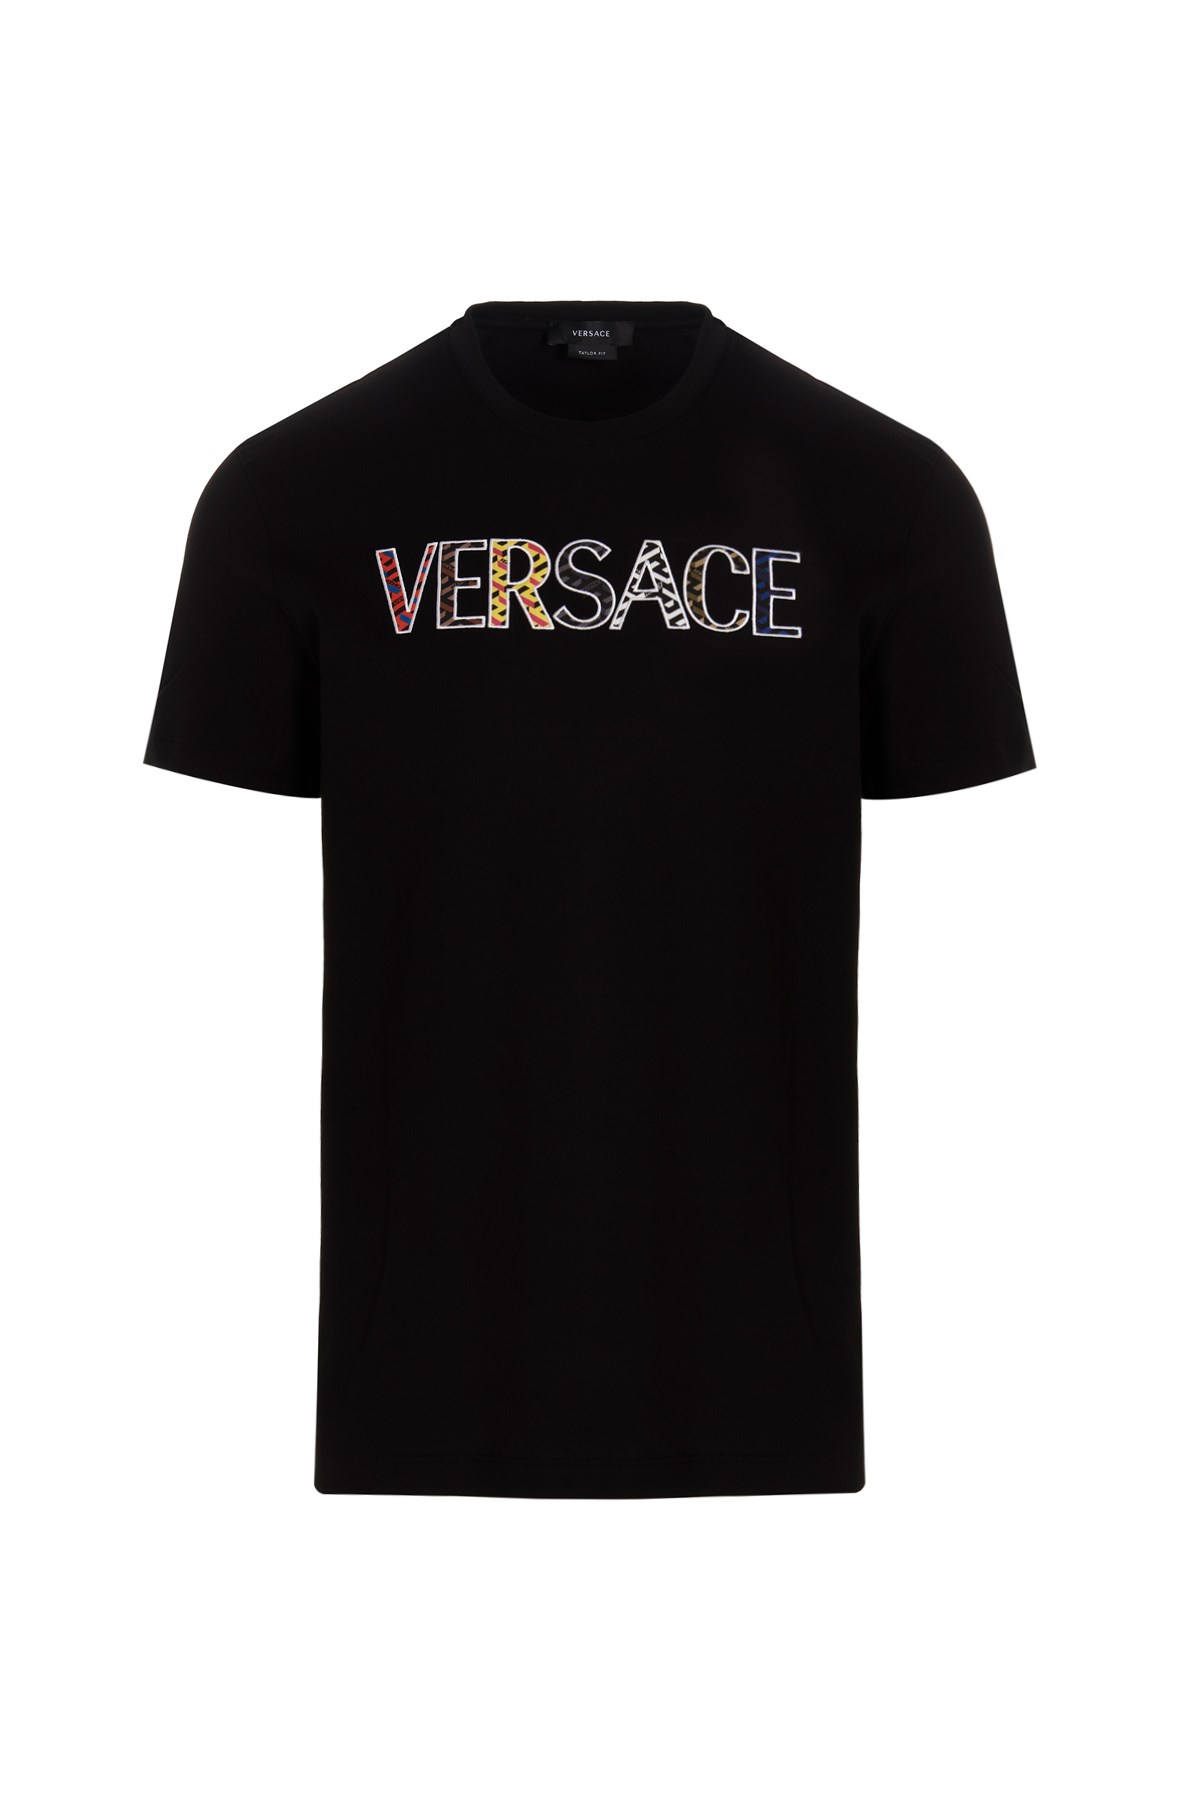 VERSACE Cut Out Logo T-Shirt